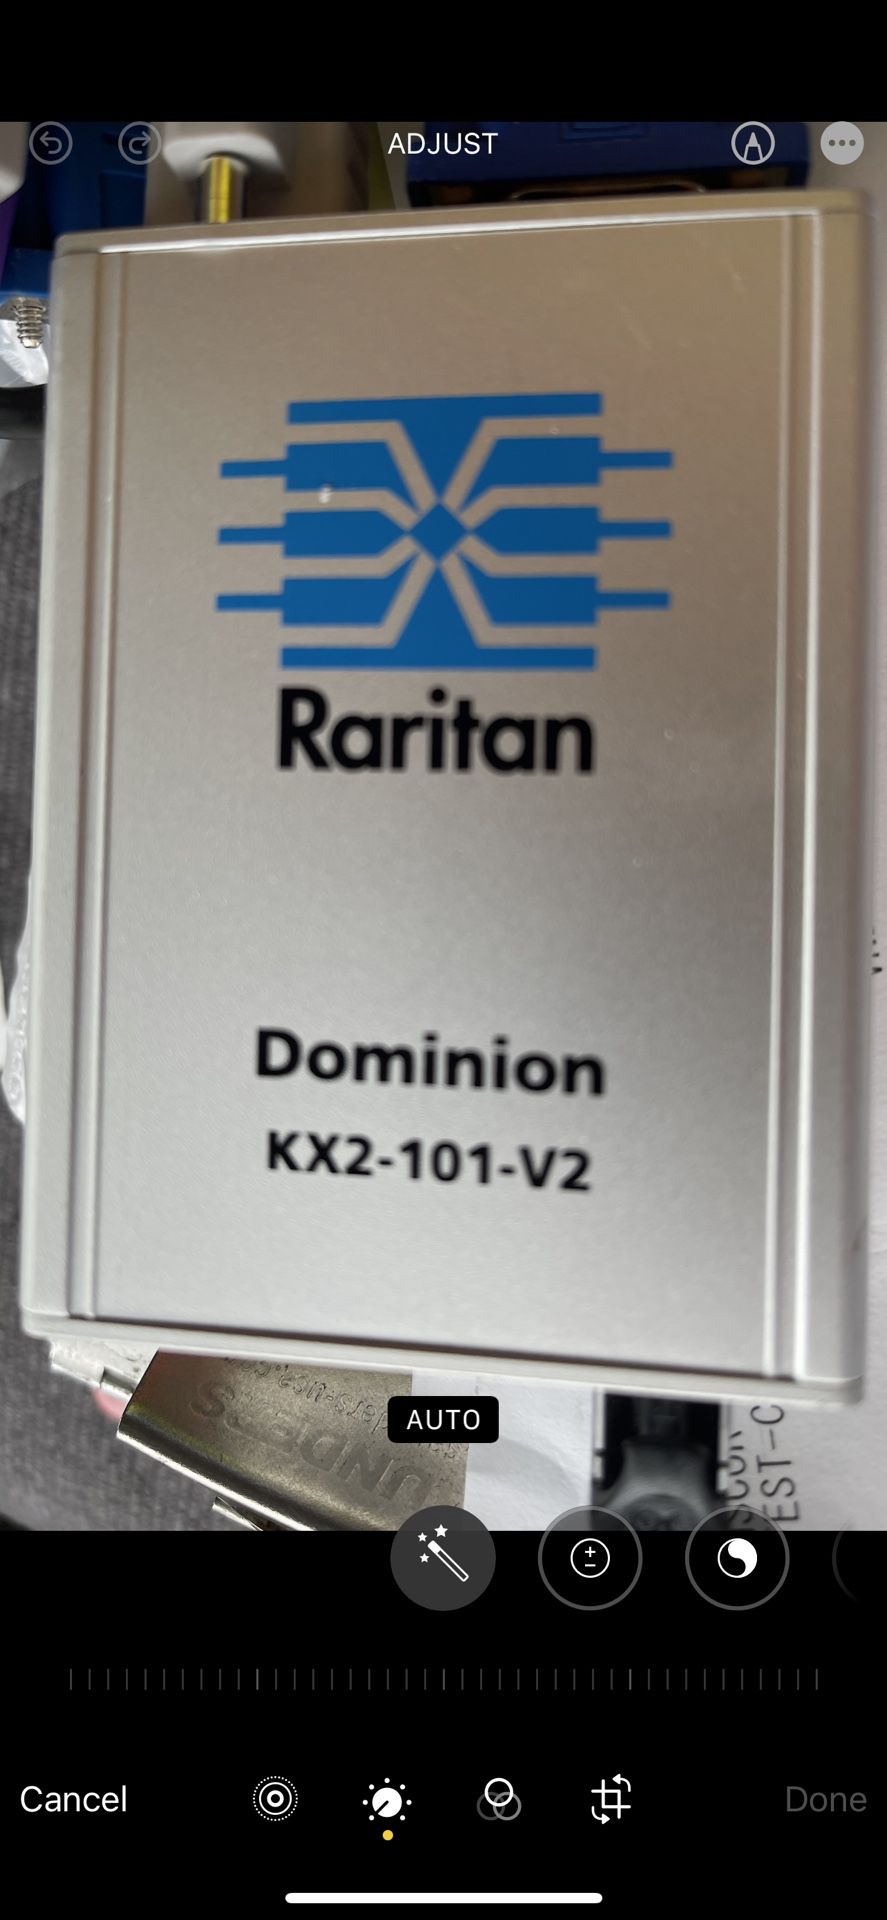 Raritan Dominion DKX2-101-V2  Switch - 